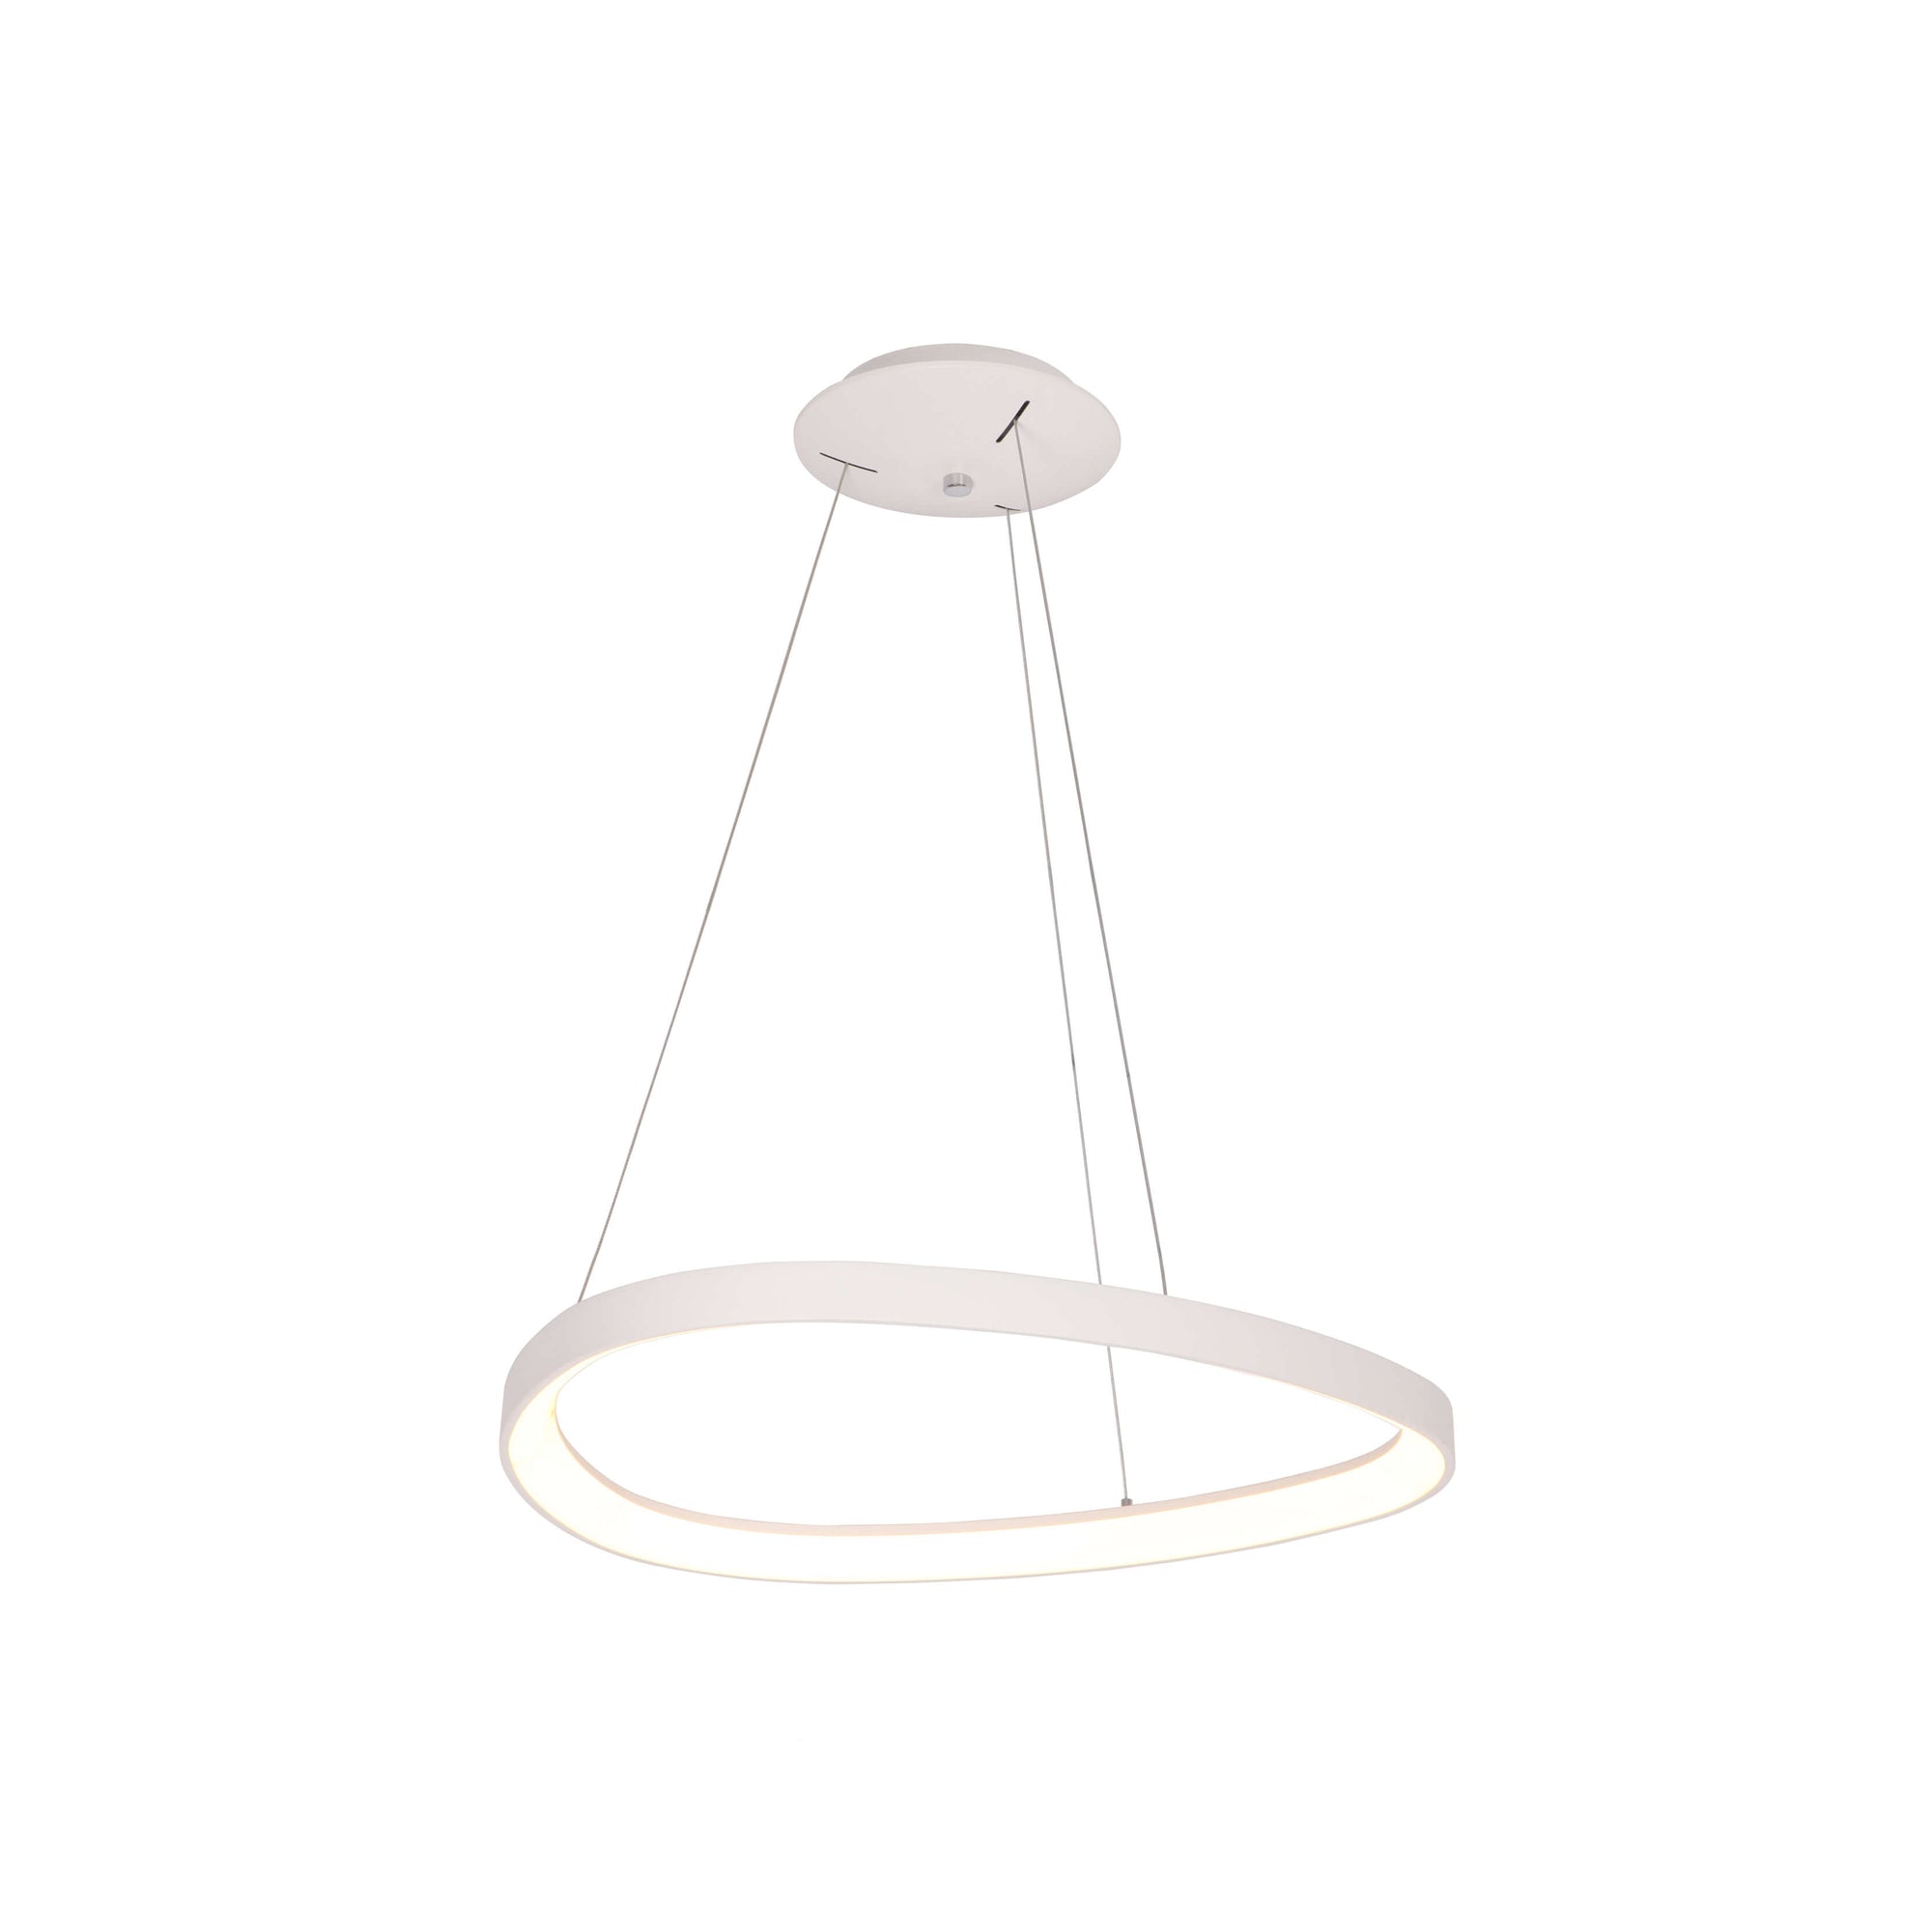 Cauti o lampa suspendata alba ELERI SS cu LED, design modern, minimalist - Corp de iluminat pentru living sau dining din colectia de lustre si candelabre DOMICILIO?